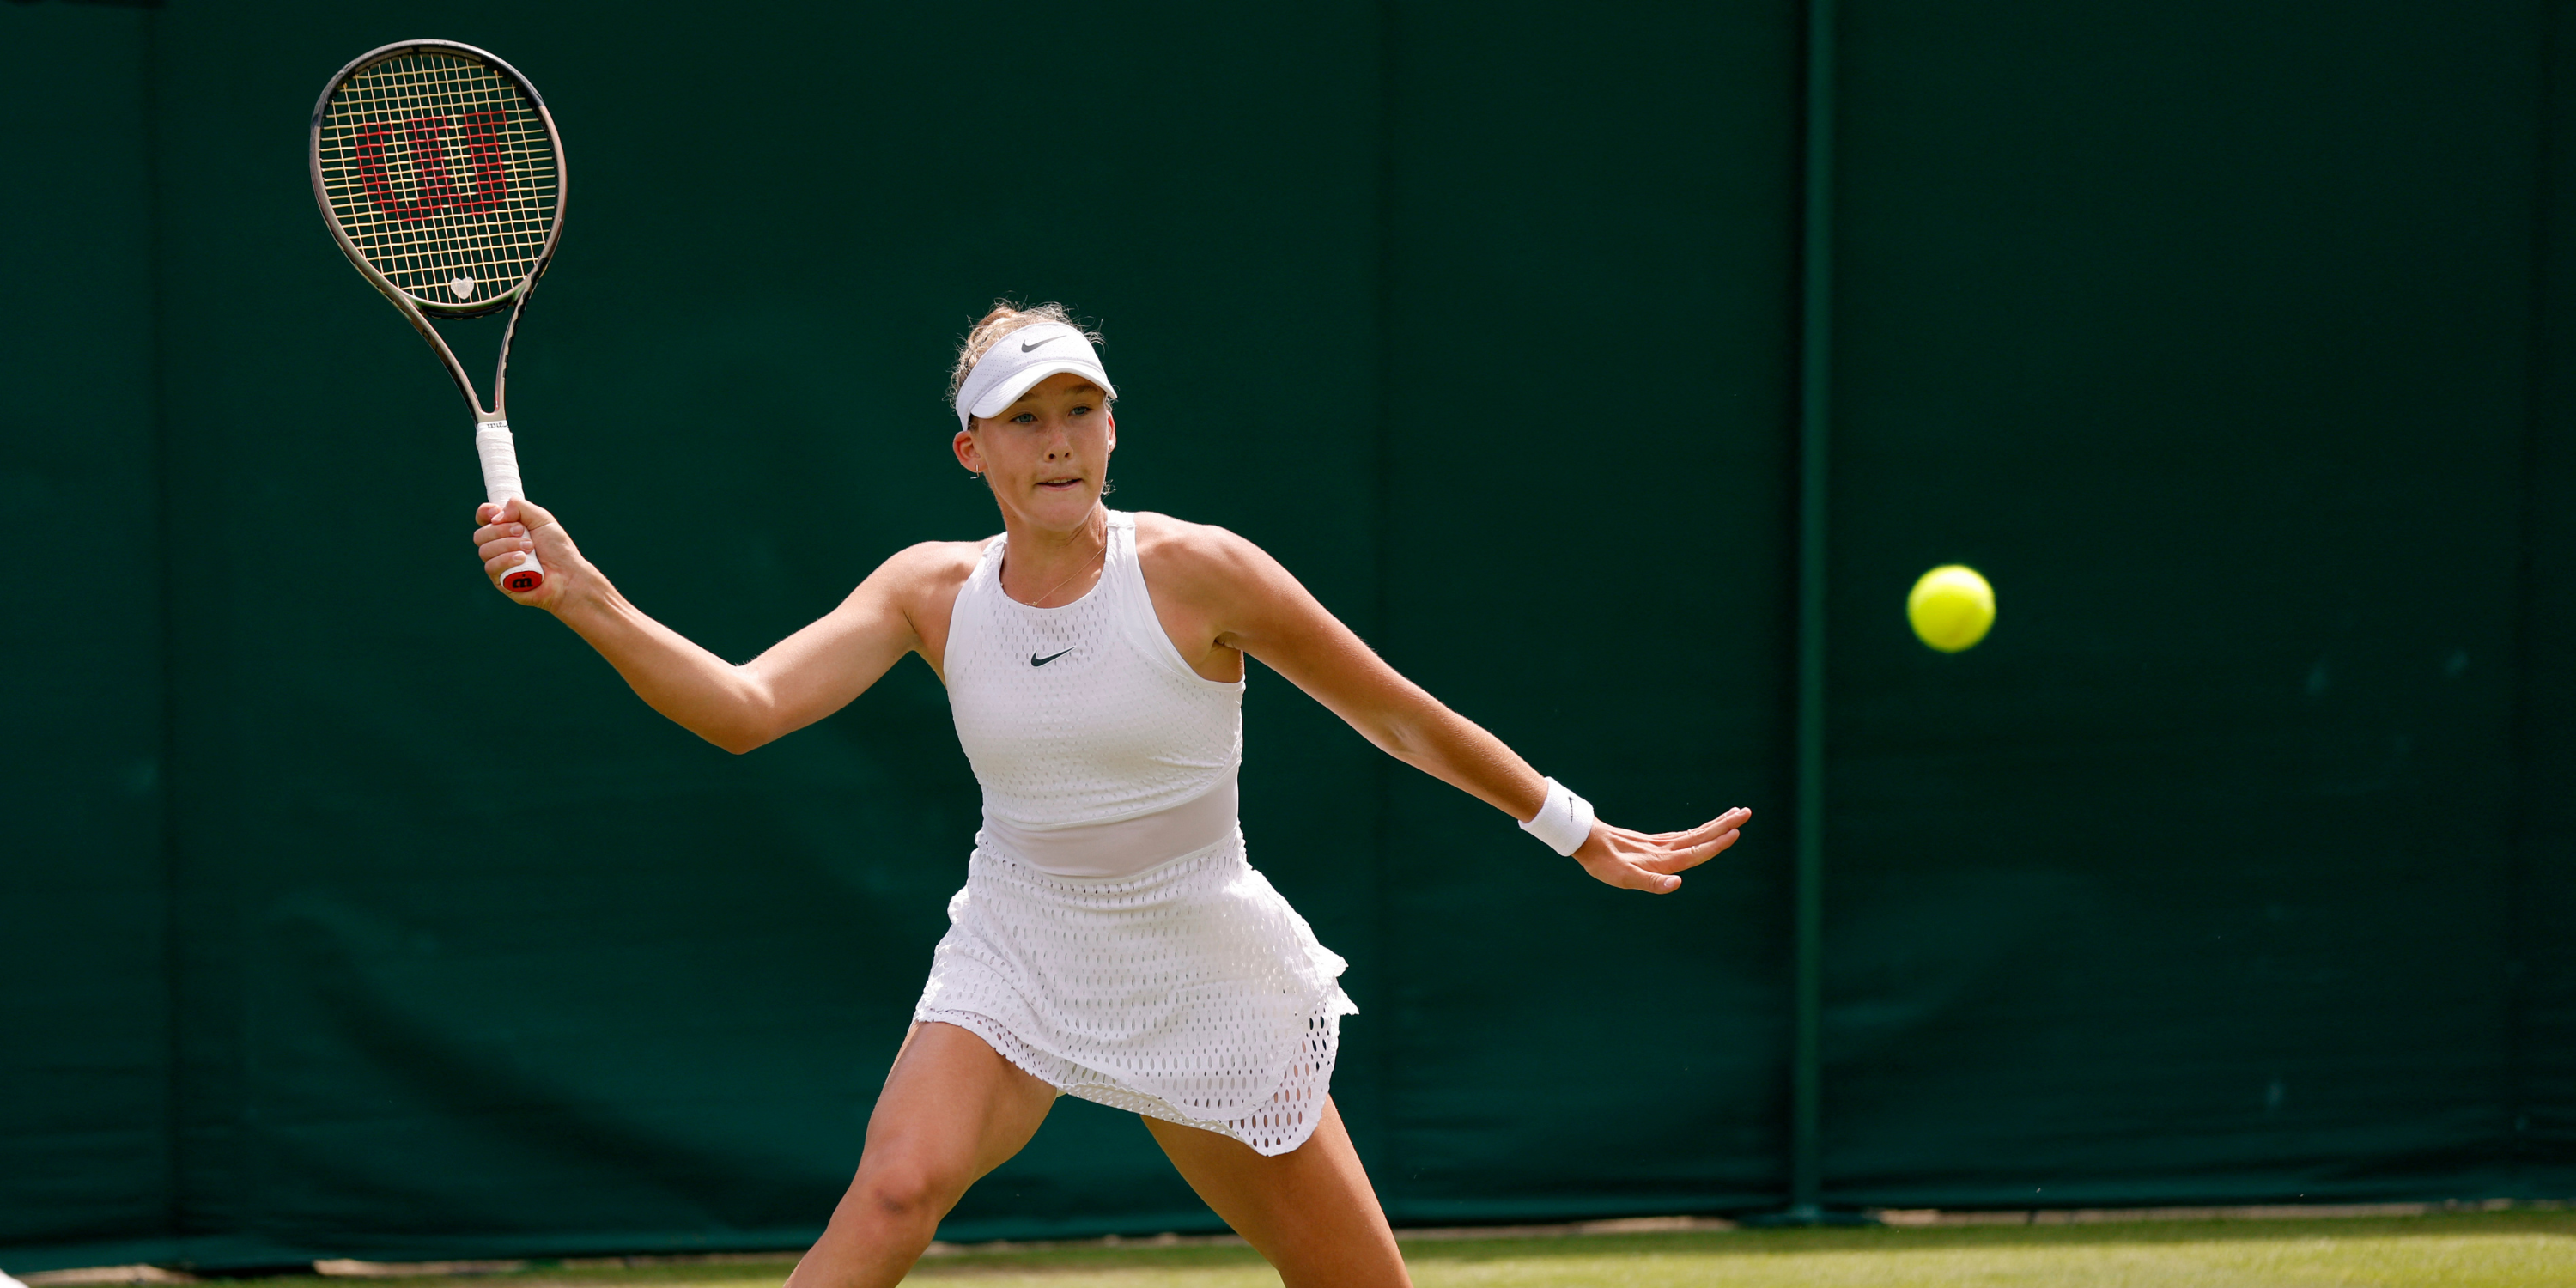 Tennis star Mirra Andreeva